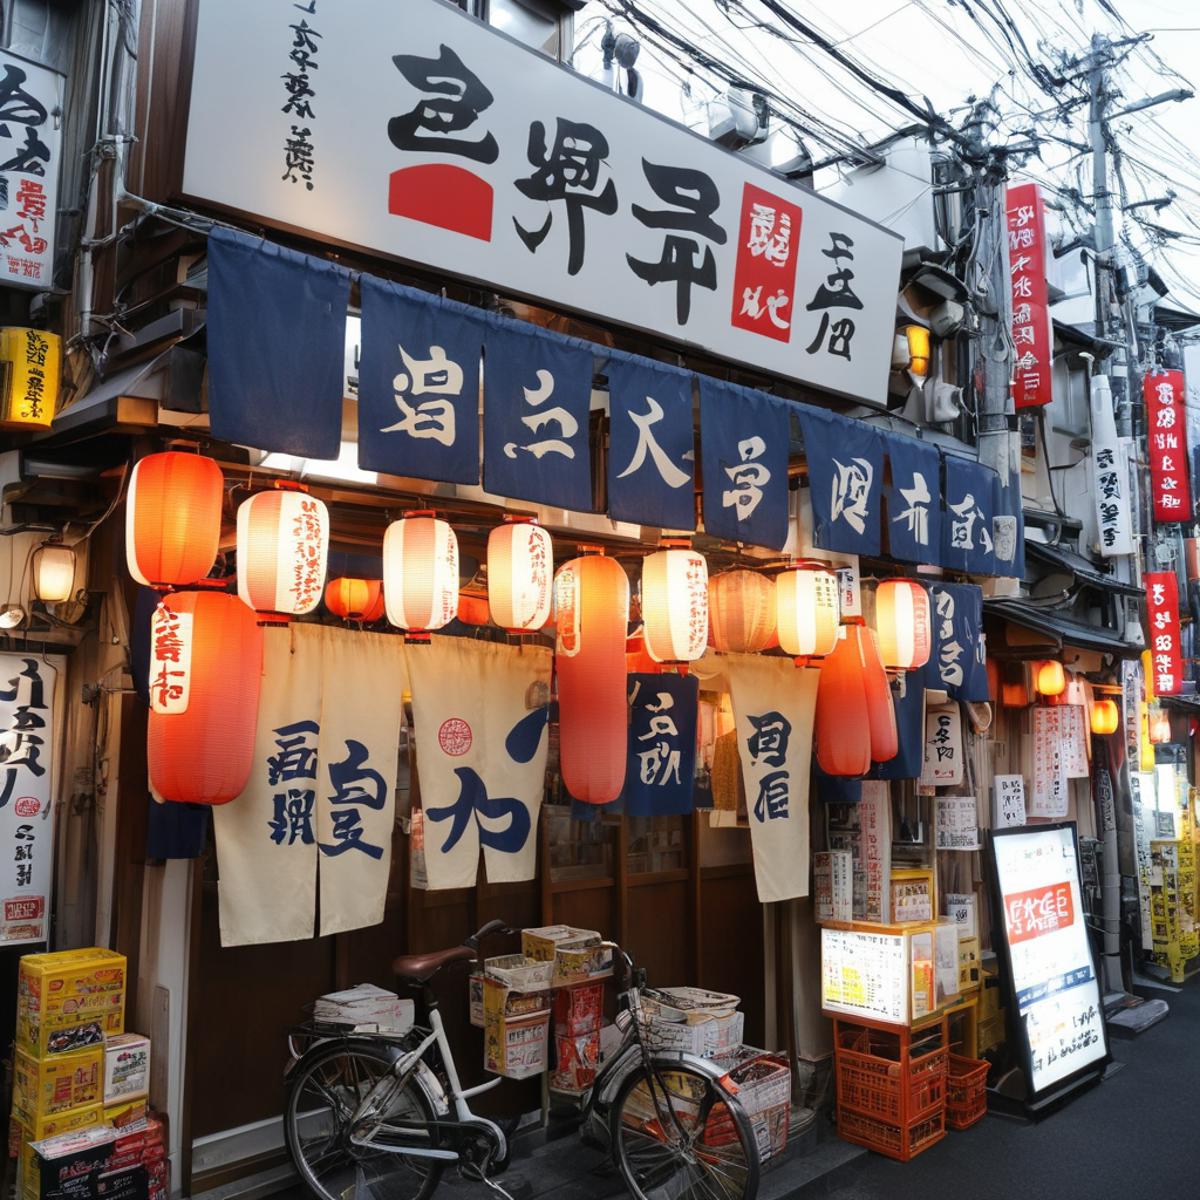 大衆酒場の外観 / Appearance of a popular Japanse tavern SDXL image by swingwings